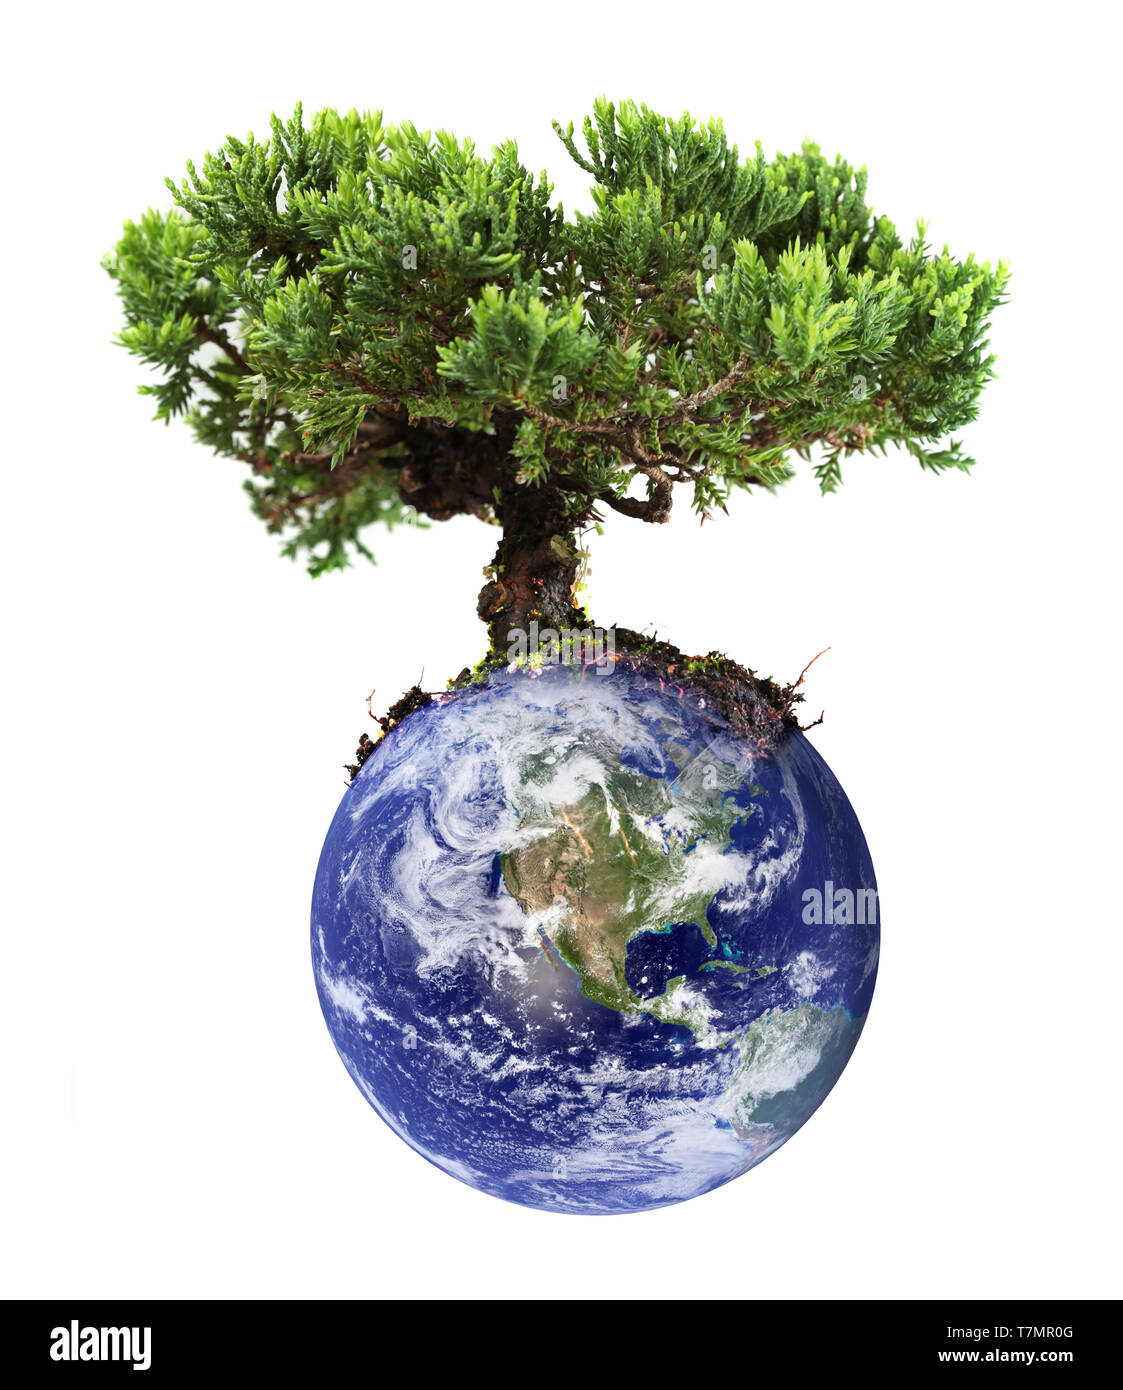 Earth tree Stock Photo